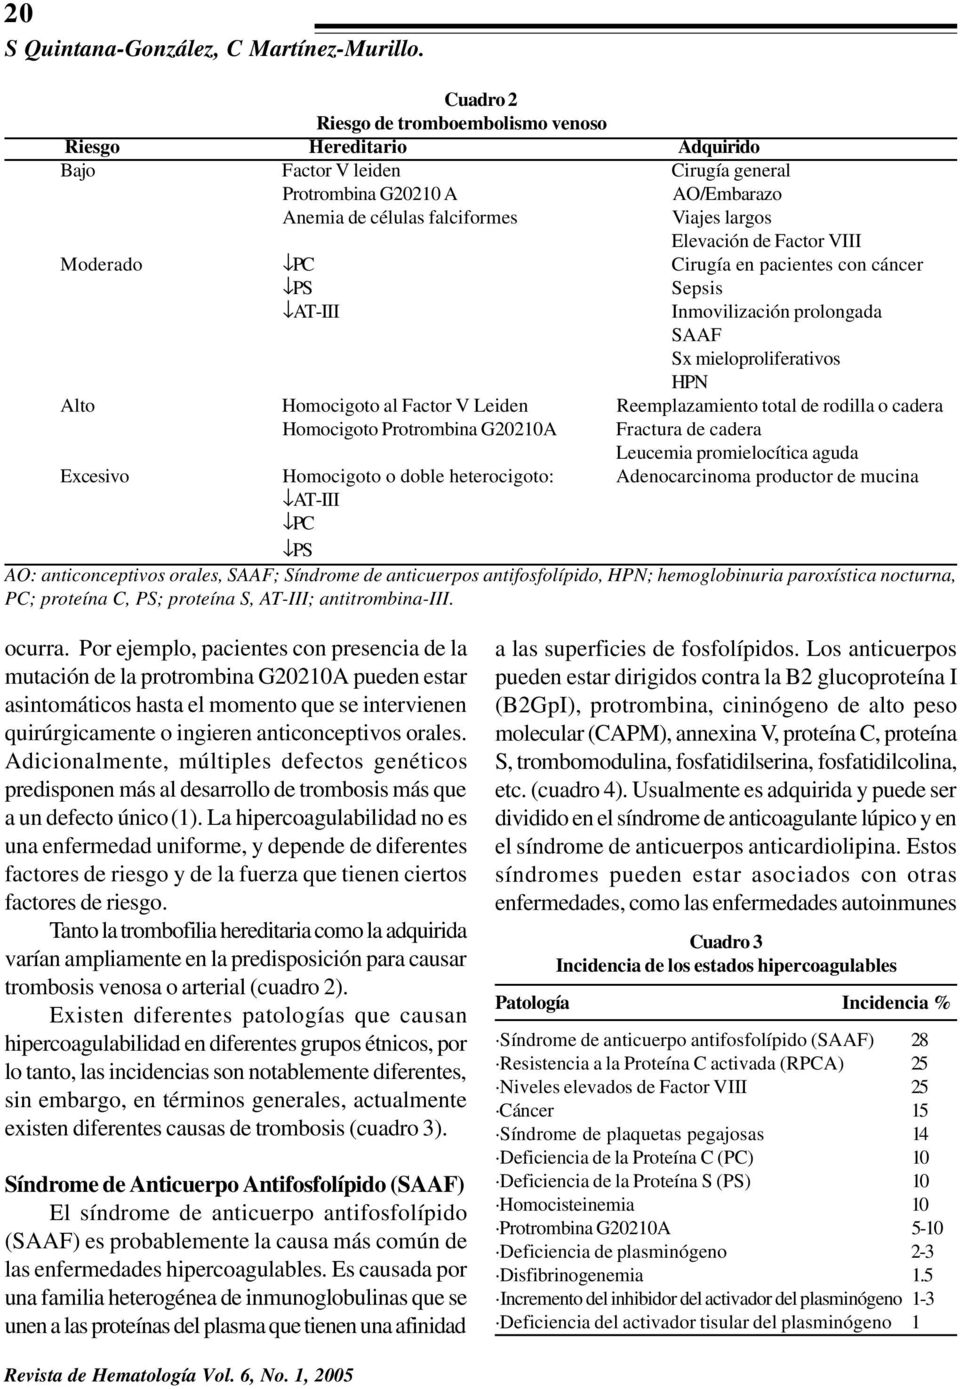 Factor VIII Moderado PC Cirugía en pacientes con cáncer PS Sepsis AT-III Inmovilización prolongada SAAF Sx mieloproliferativos HPN Alto Homocigoto al Factor V Leiden Reemplazamiento total de rodilla